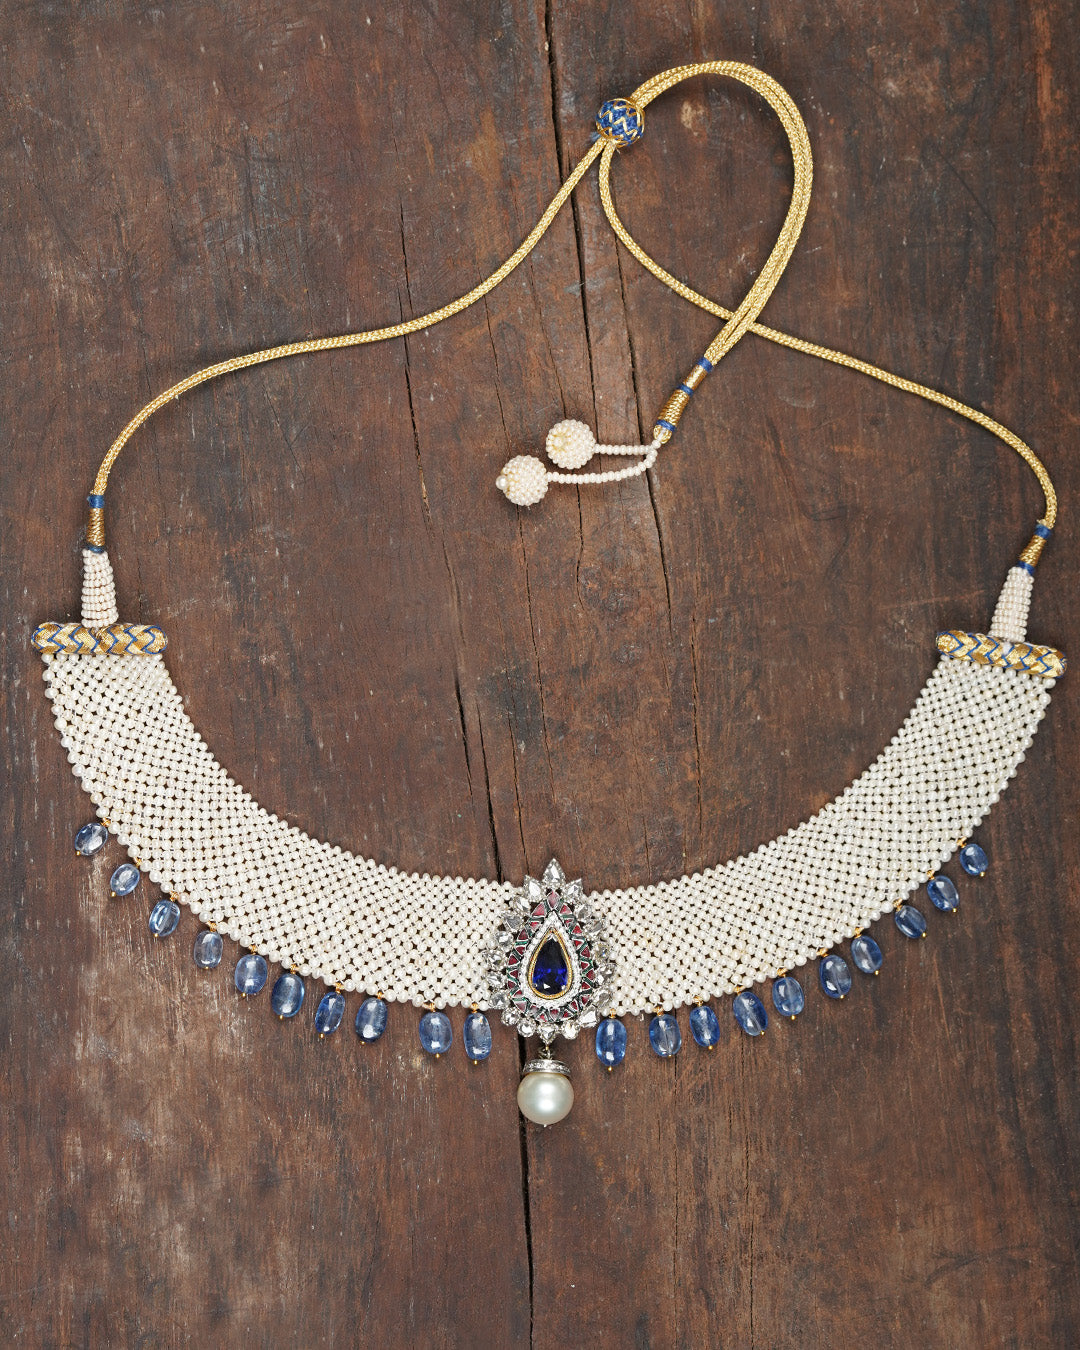 Naina Pearl Carpet Necklace